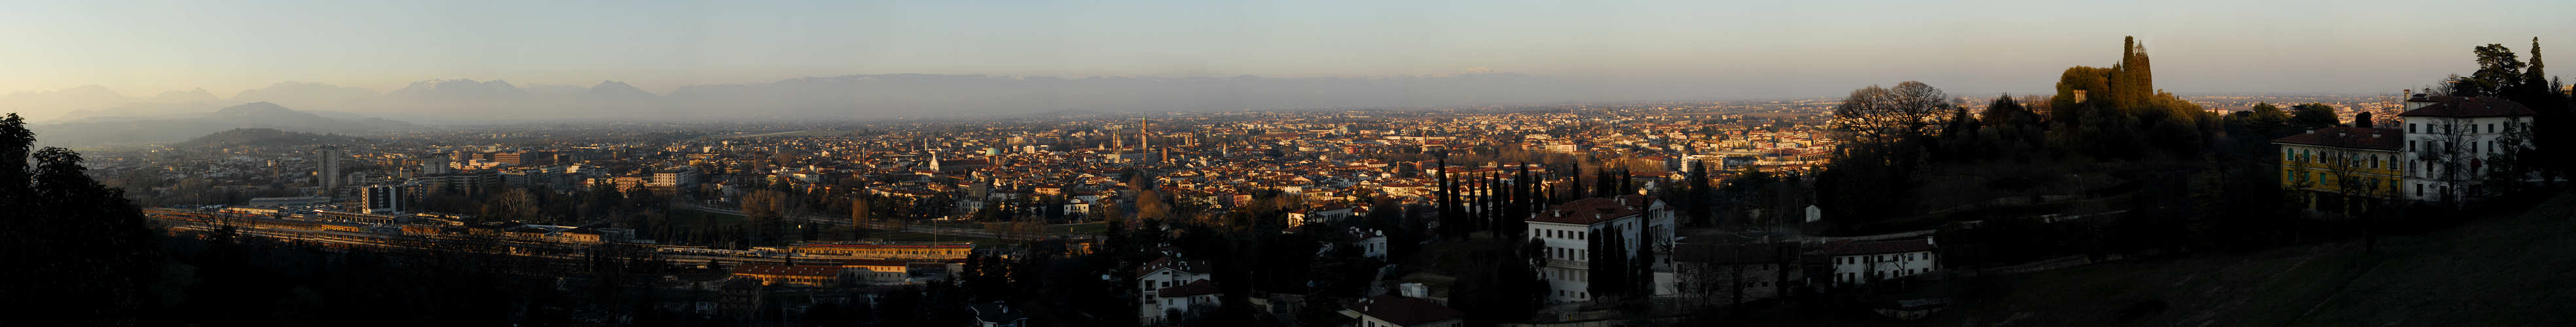 Vicenza, panoramica da Monte Berico